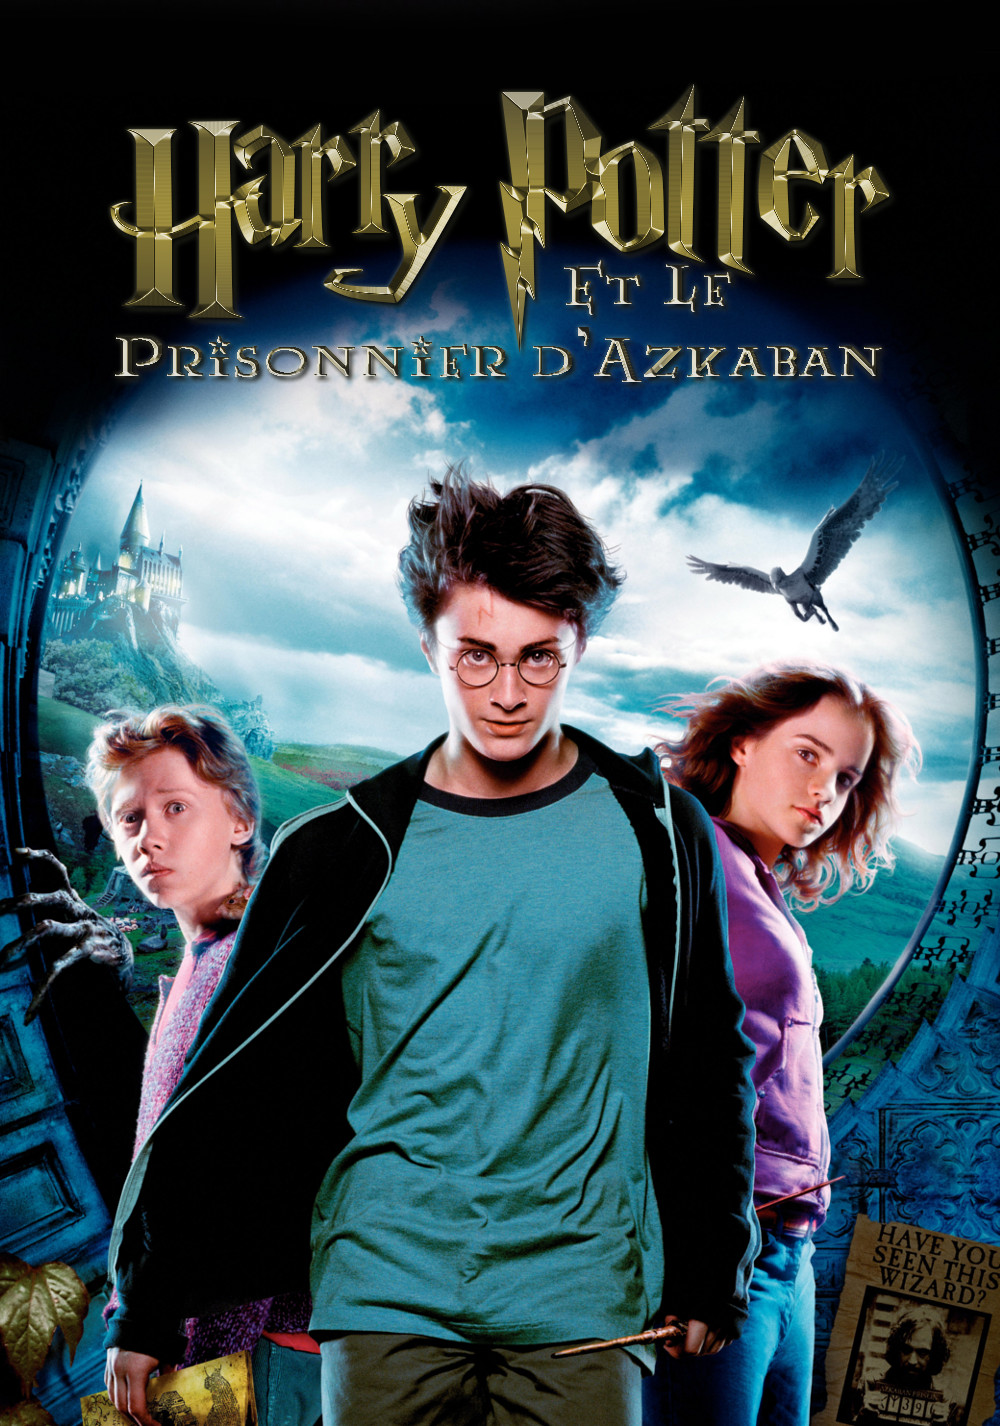 Harry Potter and the Prisoner of Azkaban Art